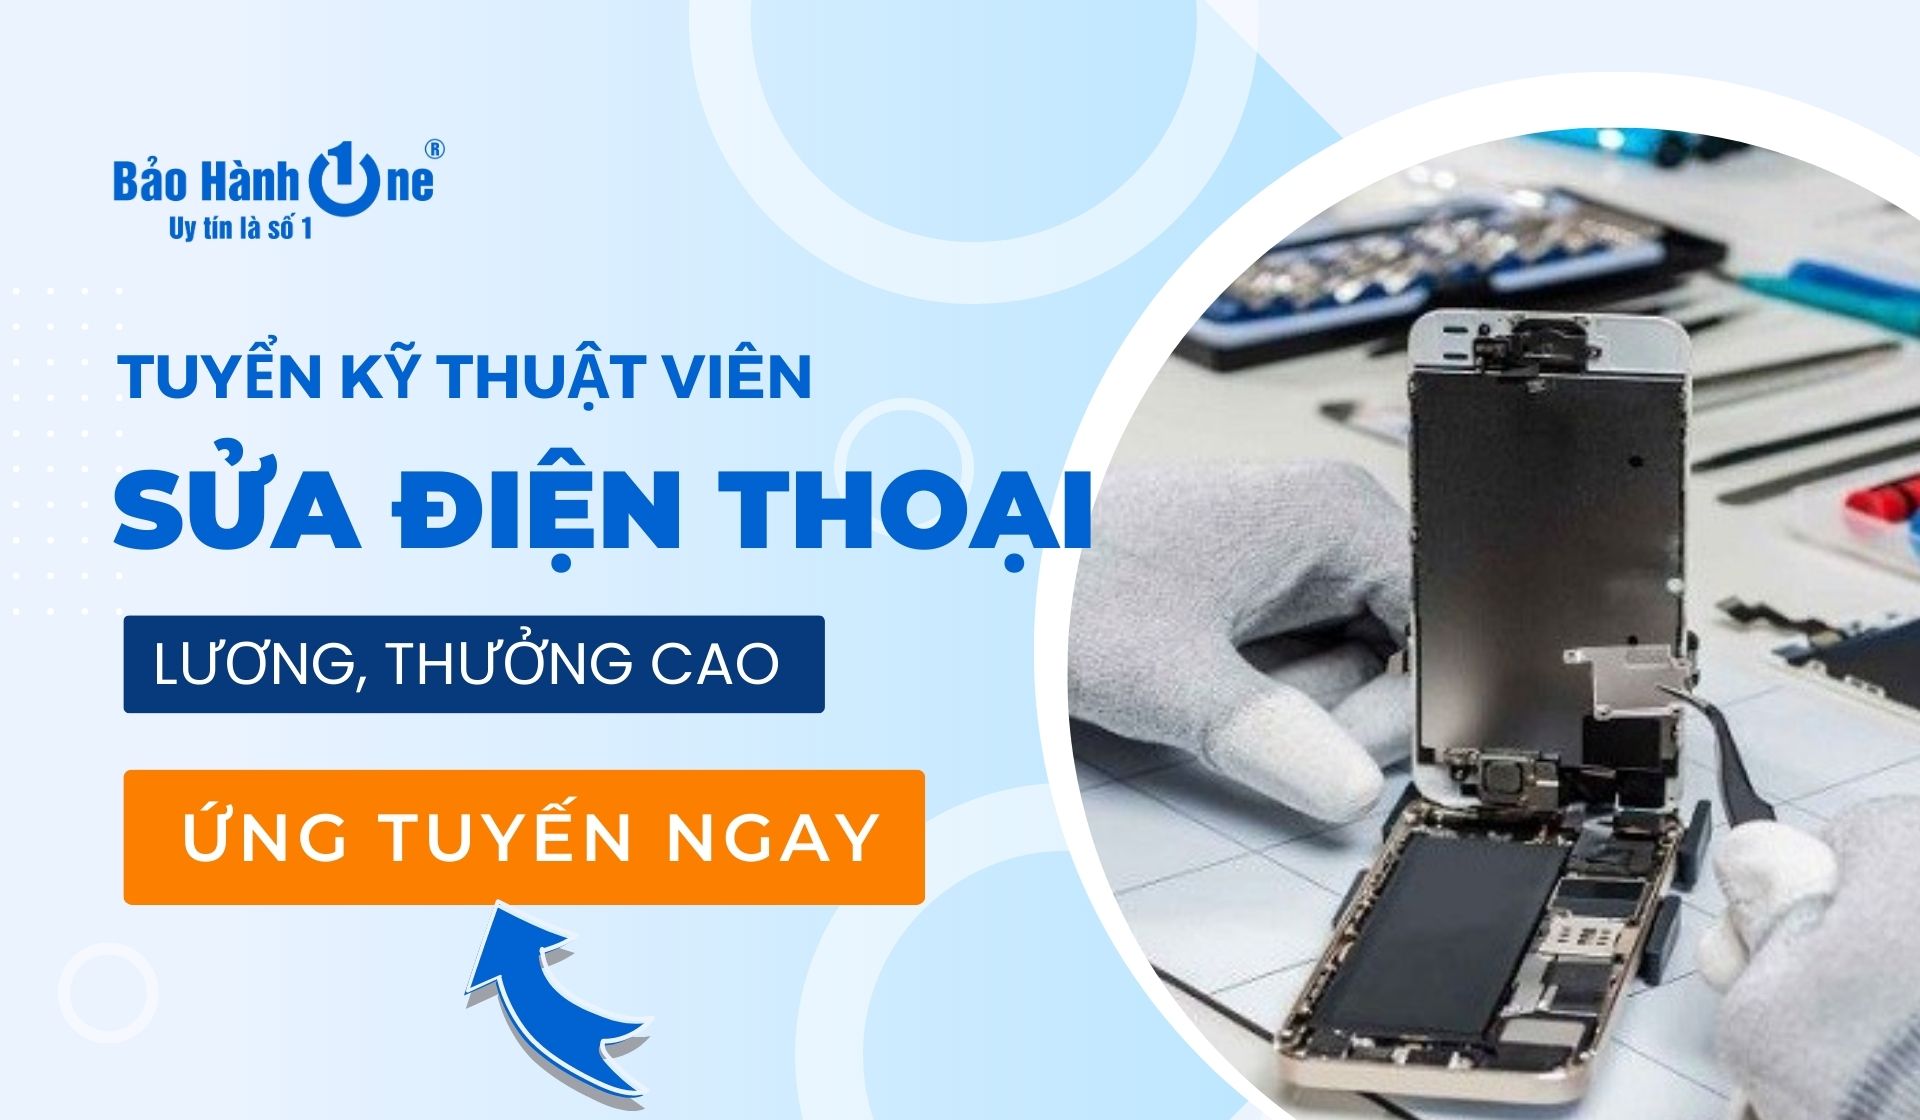 Tuyển dụng Kỹ thuật sửa chữa trên main điện thoại IOS và Android tại Hồ Chí Minh